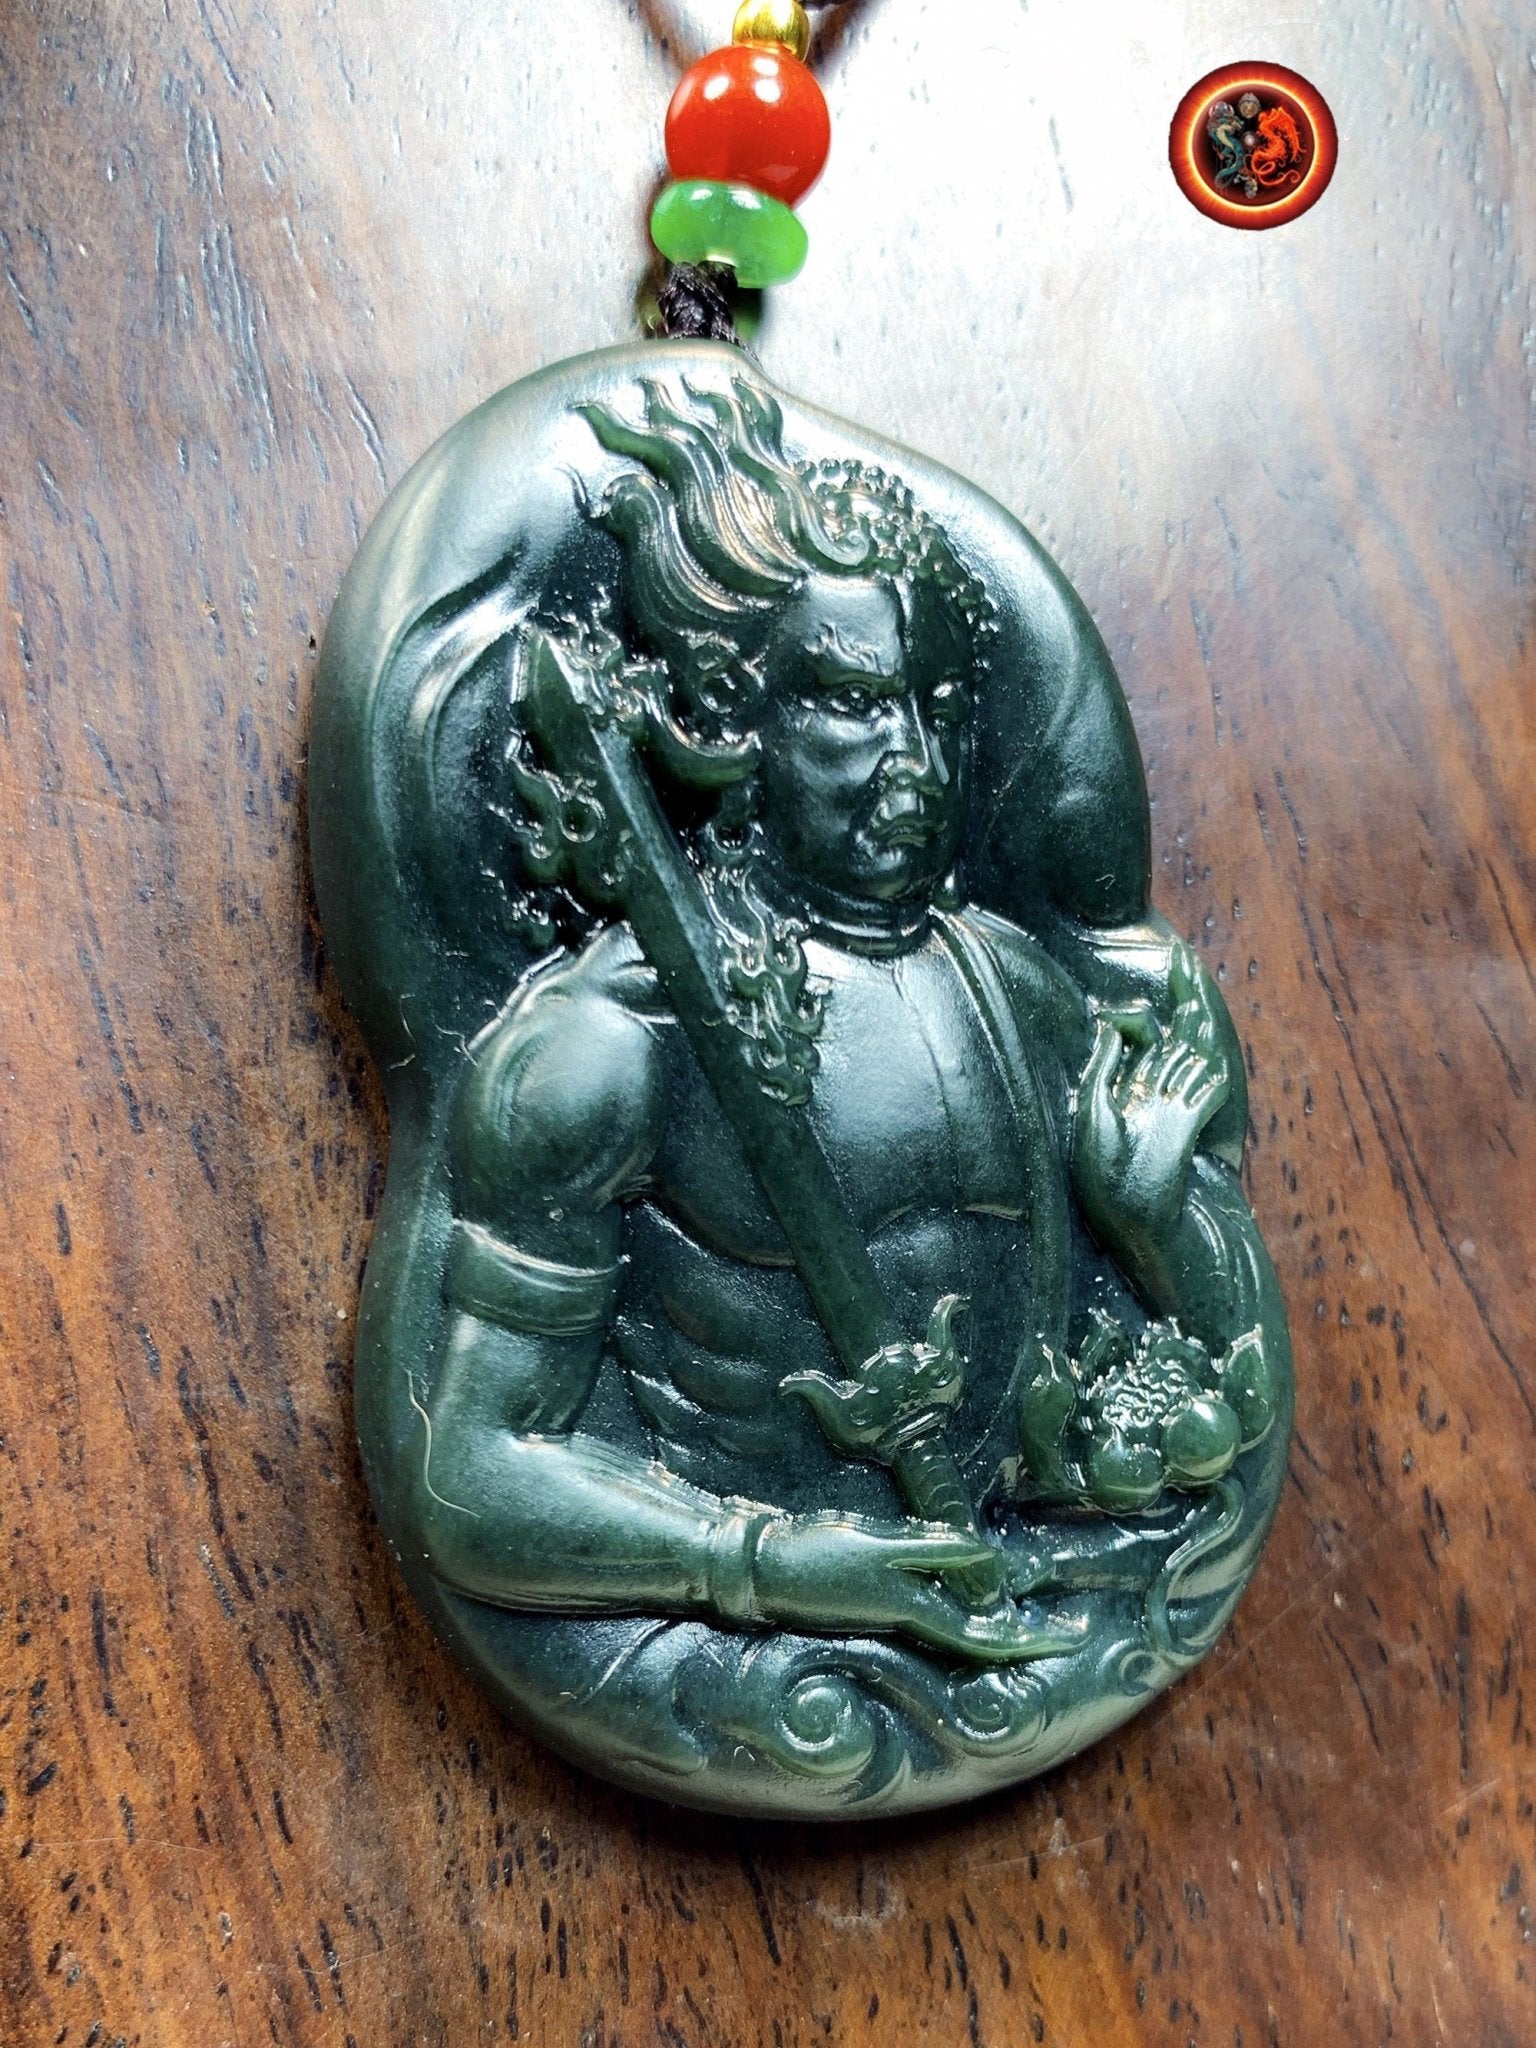 Pendentif bouddha en jade.Bouddha Acala- Bouddha Sakyamuni. Jade naturel expertisé. Entièrement réalisé artisanalement, pièce unique. - obsidian dragon